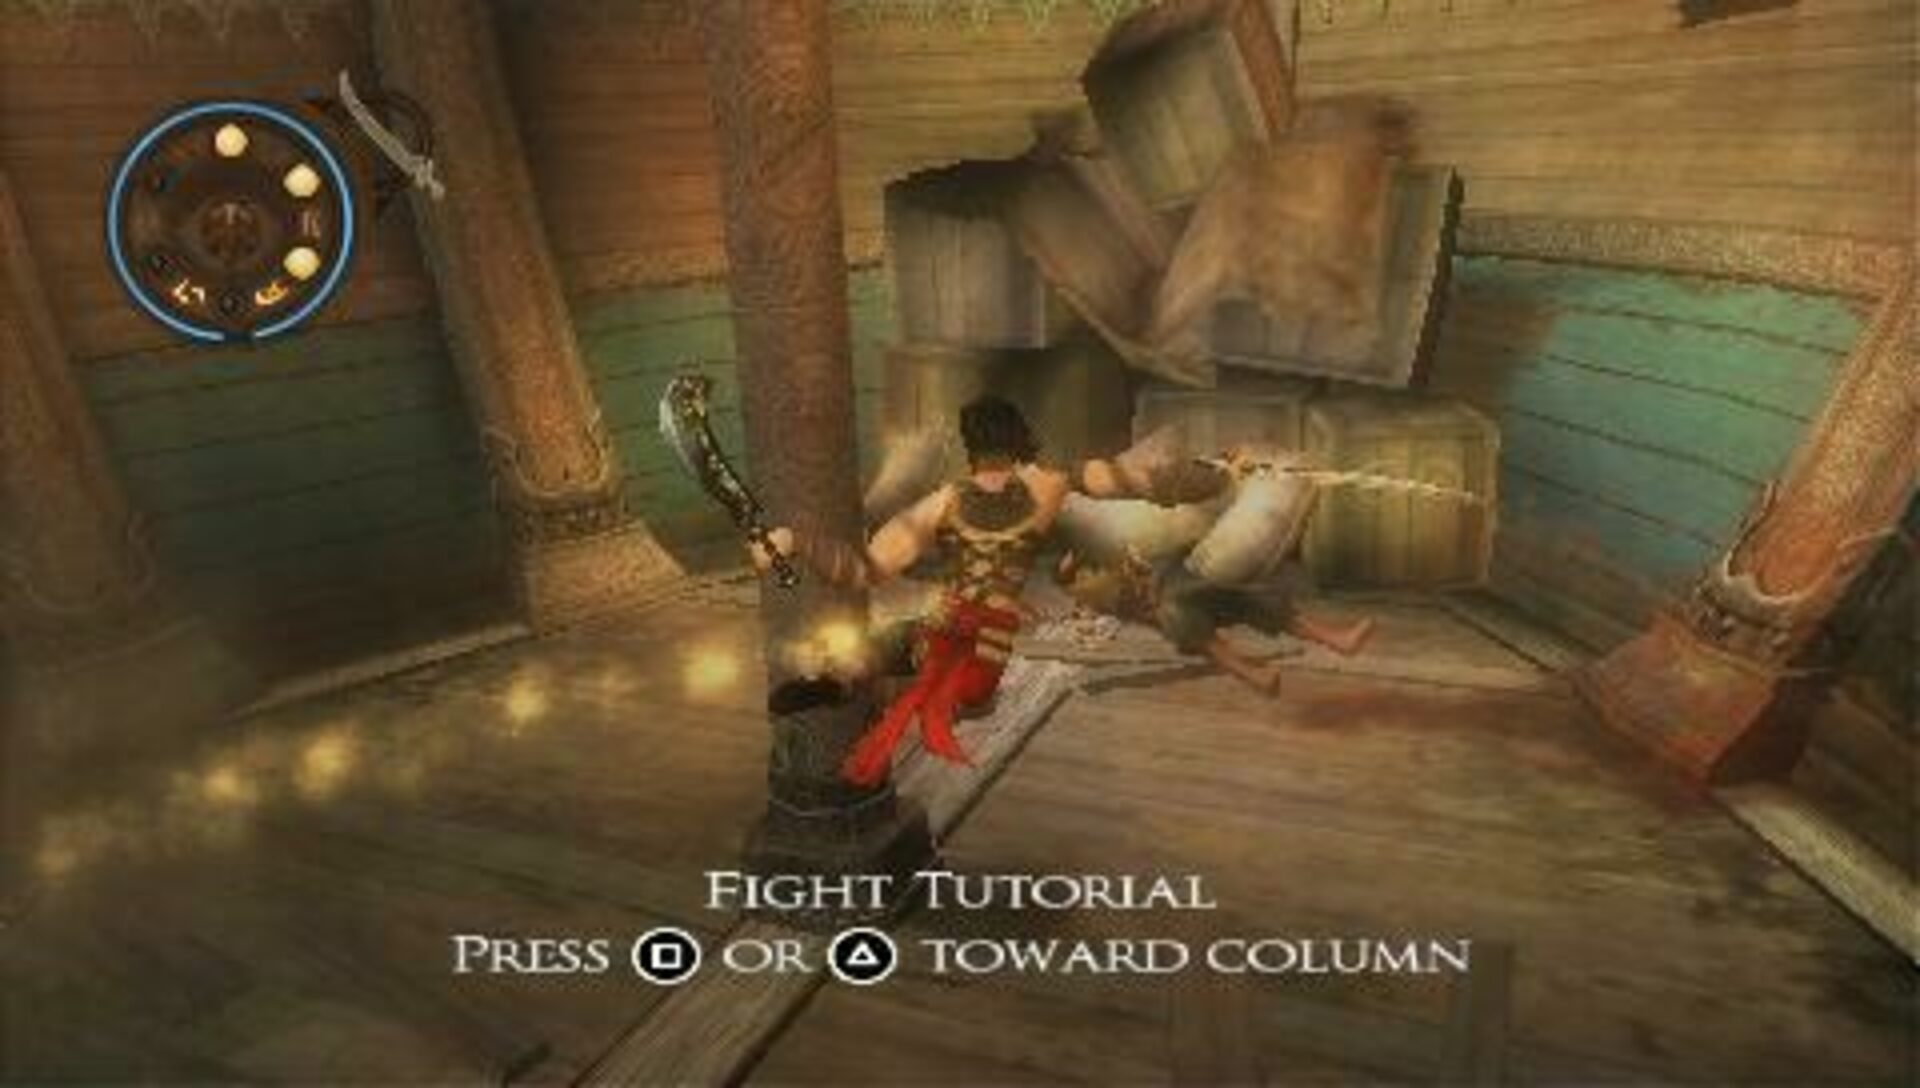 Prince of Persia Revelations (platinum) - XQ Gaming